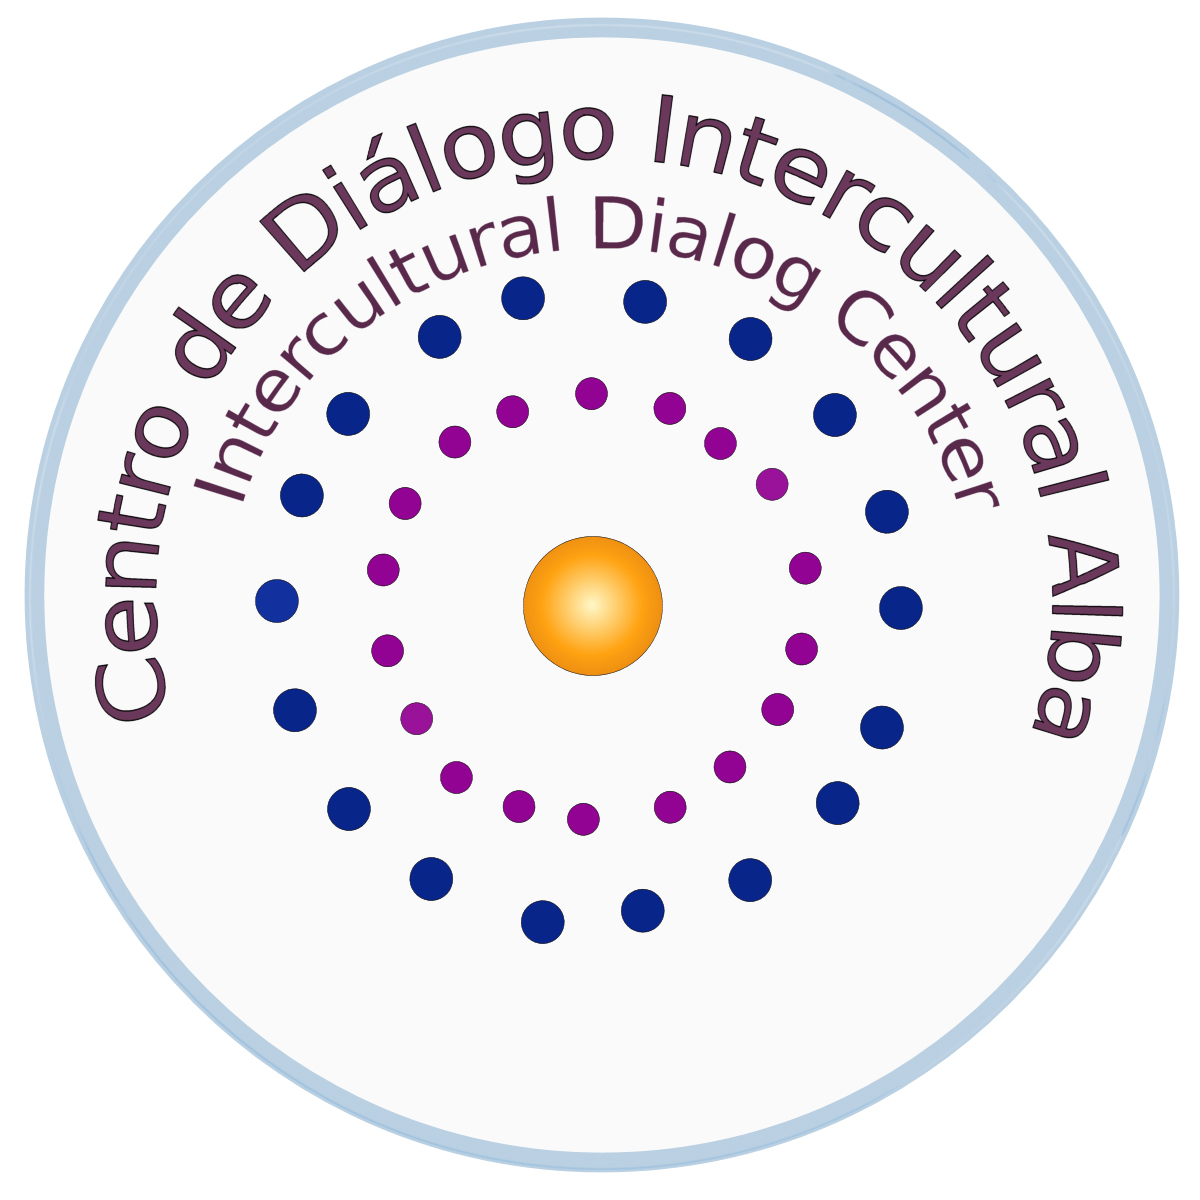 Intercultural Dialog Center Alba - Buenos Aires / Argentina